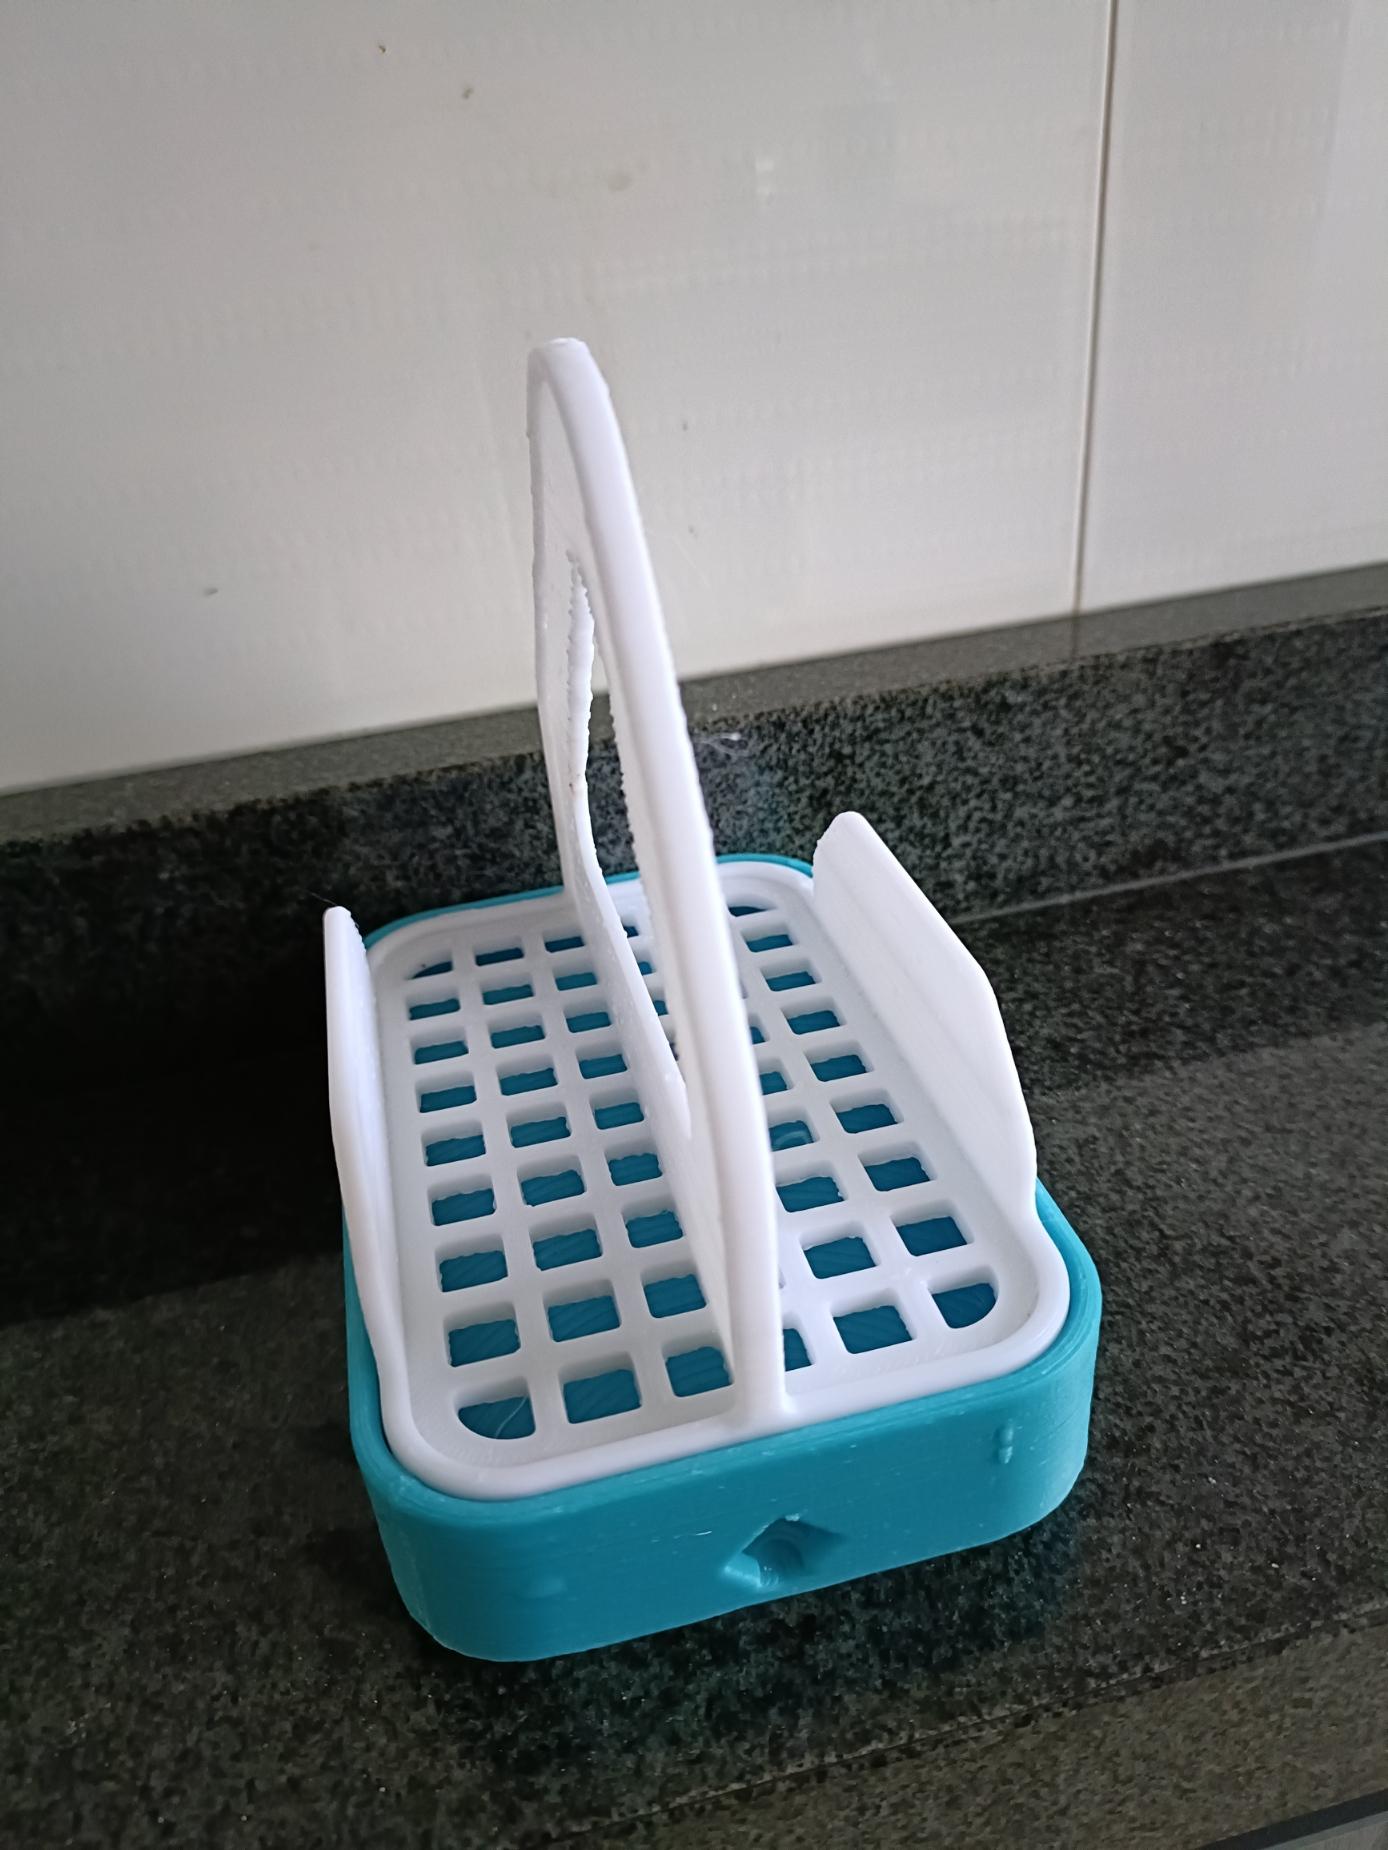 Universal Drainer (V3) (Cutlery, Sponge, Soap) 3d model